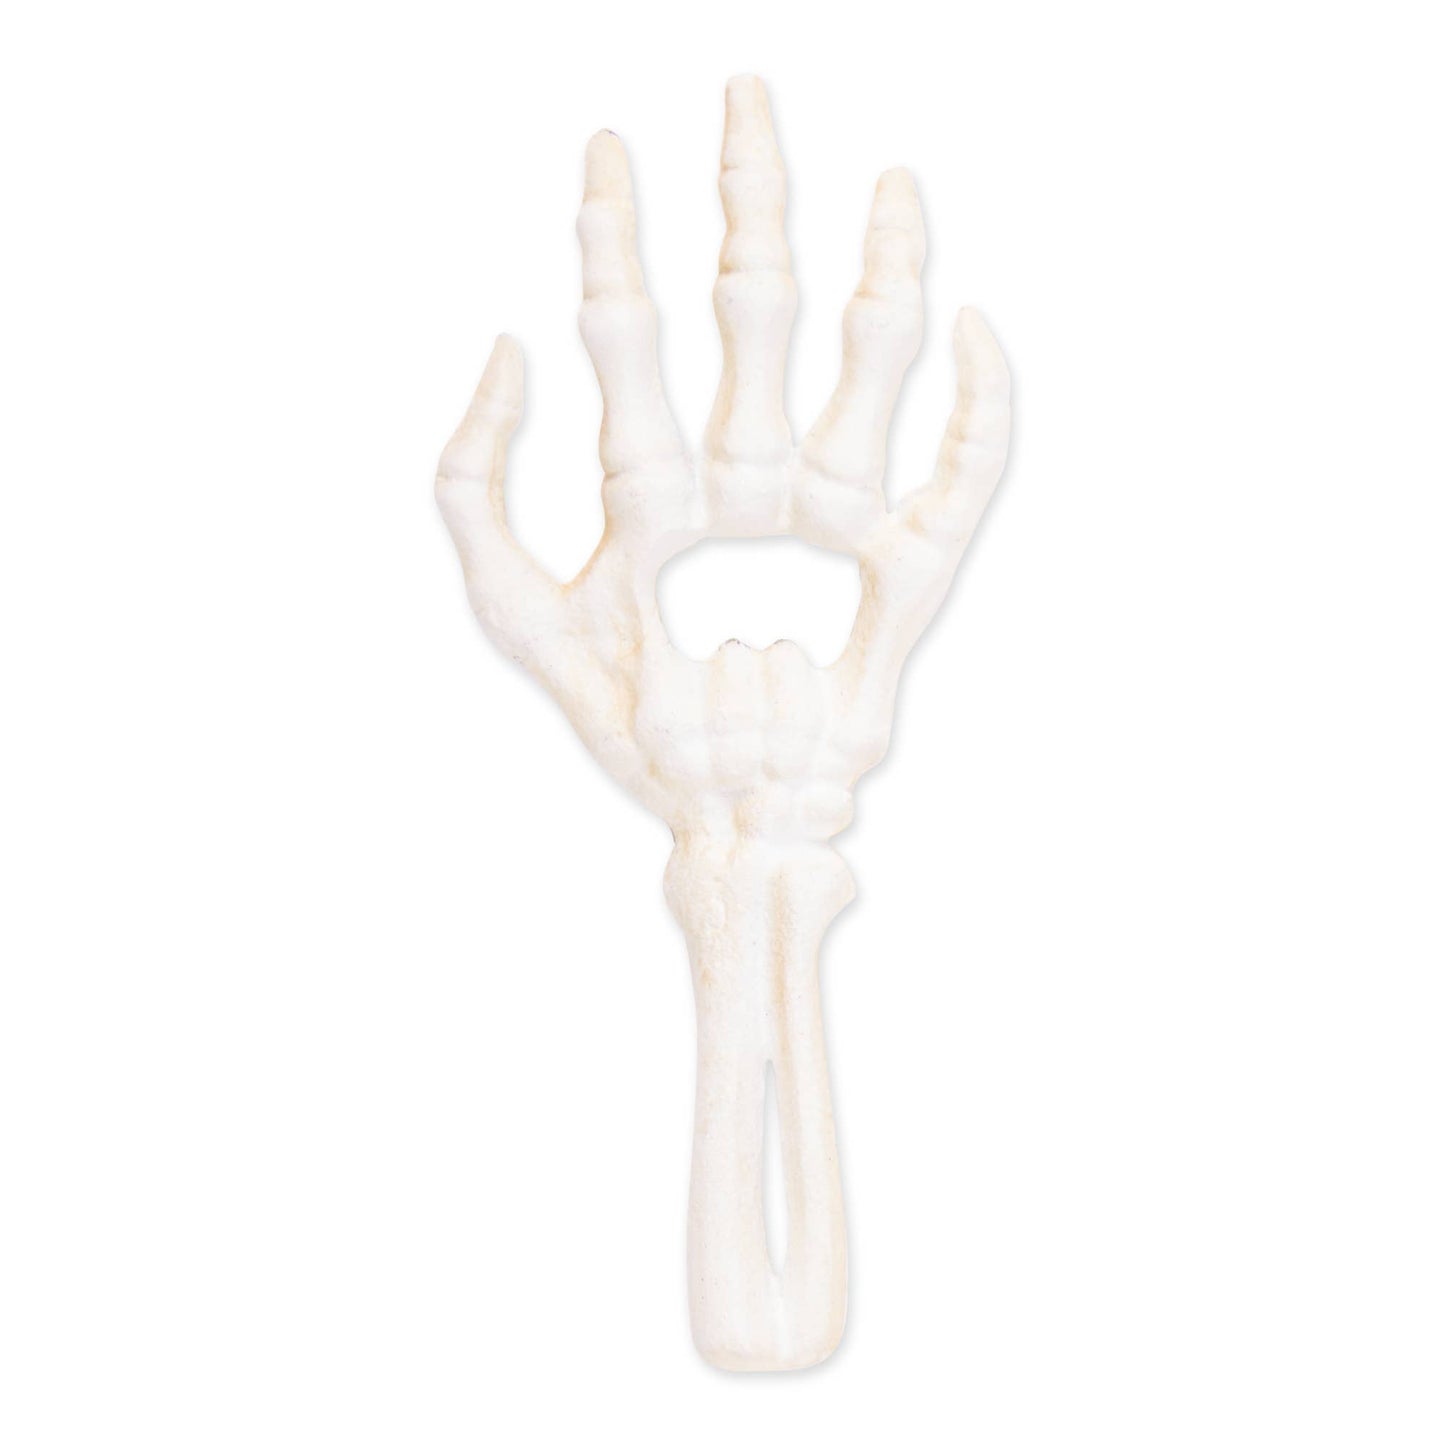 Bottle Opener (Cast Iron) - Skeleton Hand